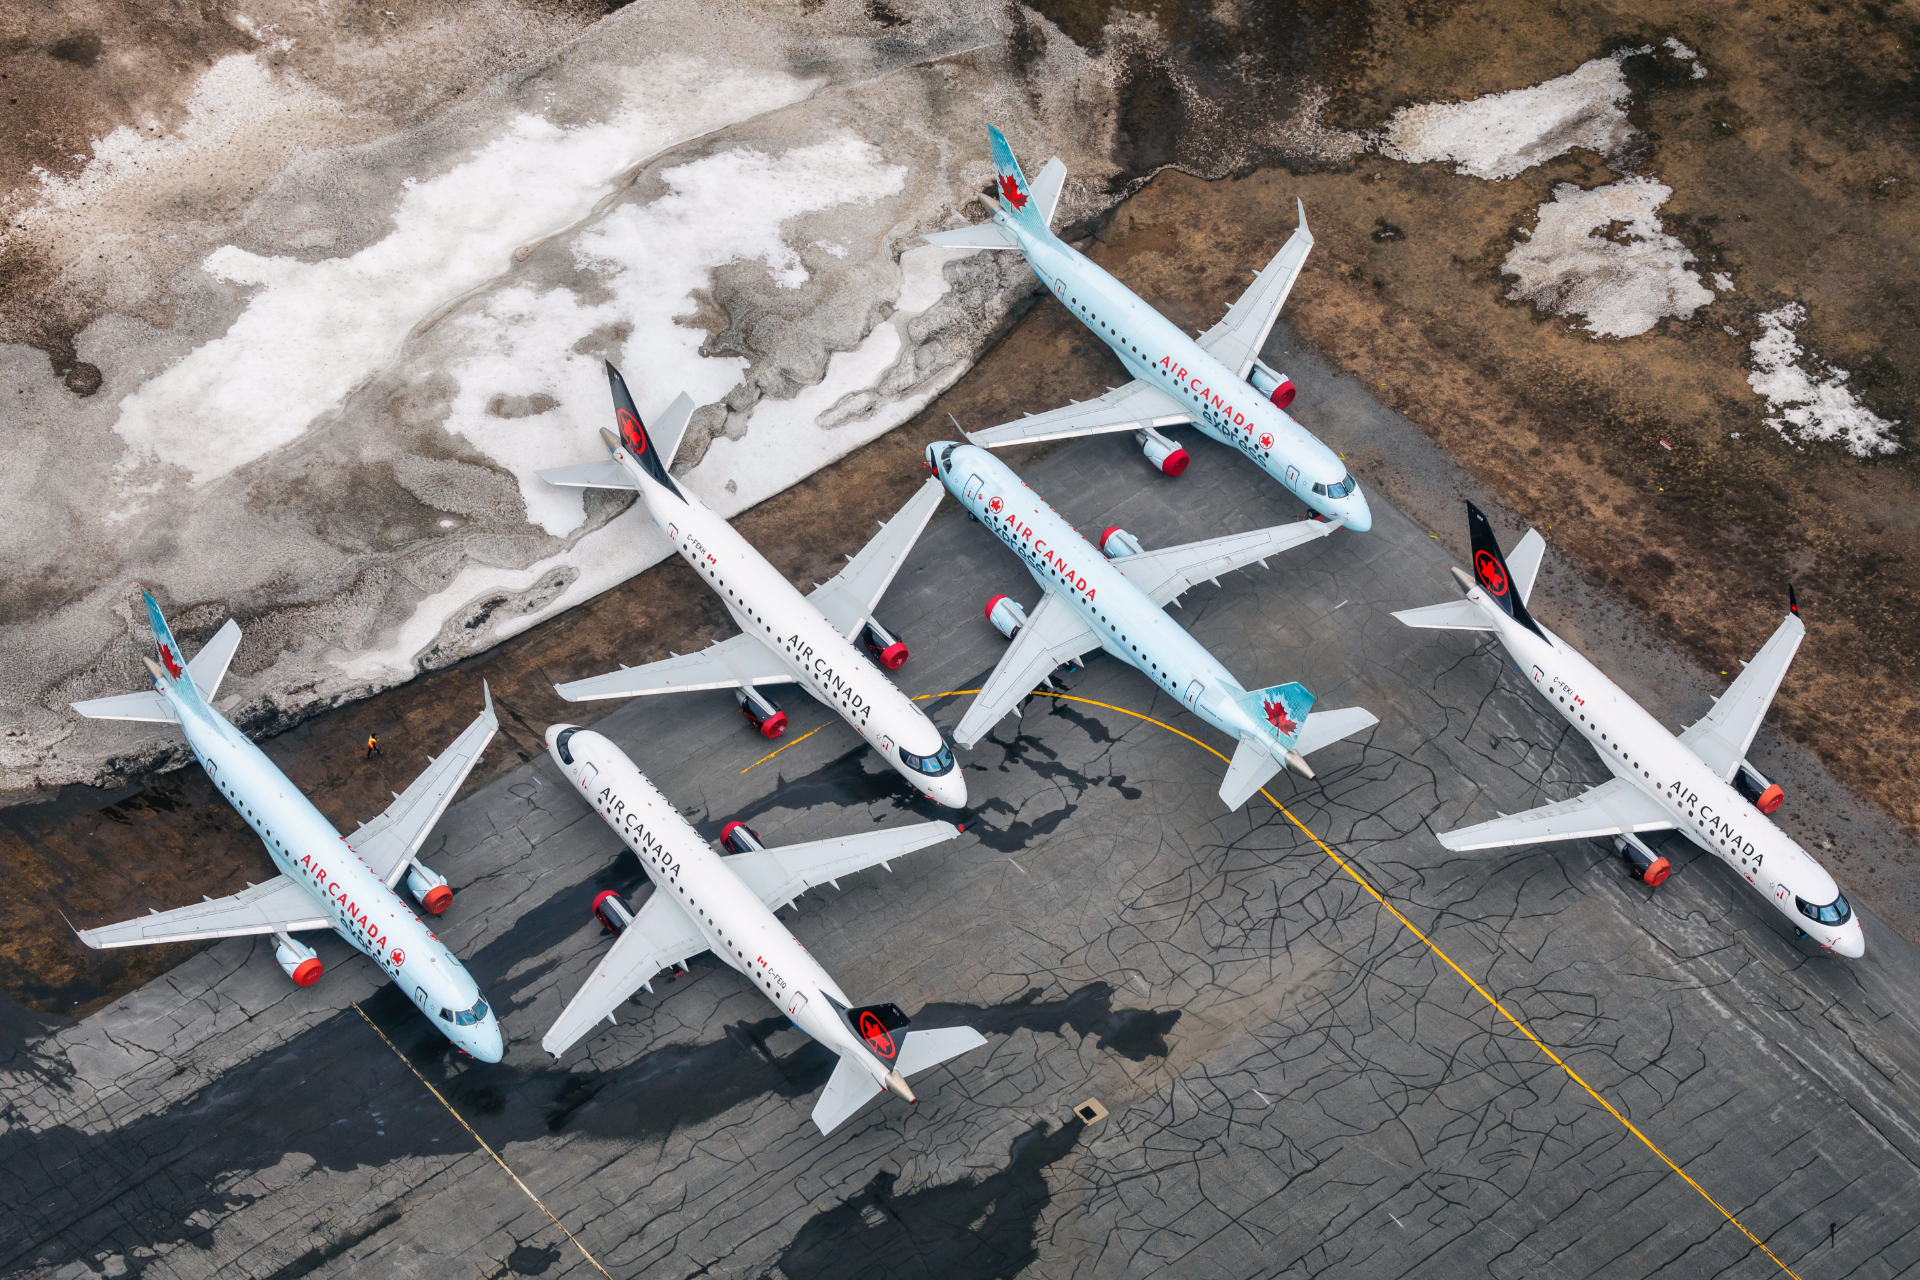 Đại dịch COVID-19 ảnh hưởng nặng nề đến ngành hàng không. Mặc dù đối với nhiều hãng hàng không, kế hoạch khôi phục là ưu tiên hàng đầu, nhưng các đổi mới và công nghệ vẫn nằm trong chương trình nghị sự. Ảnh: @Pixabay.